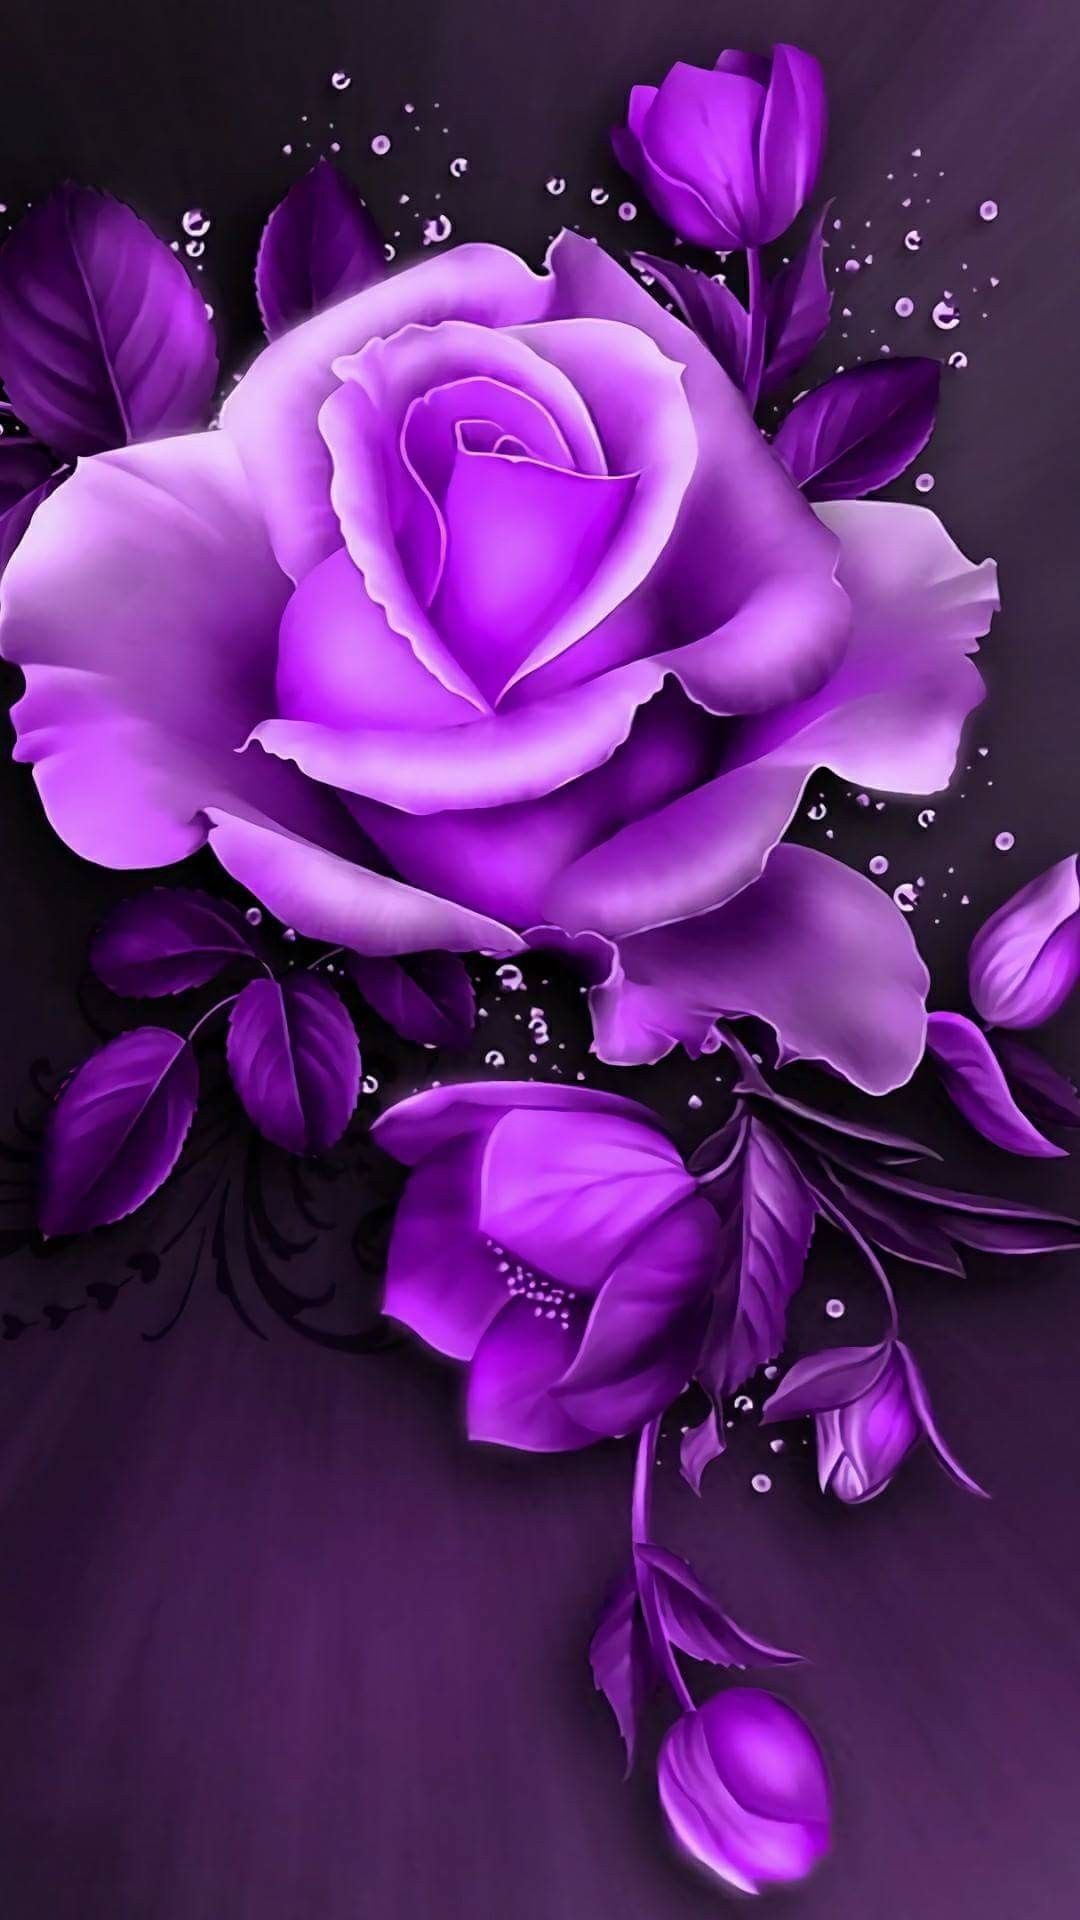 Hình nền hoa hồng tím đẹp mắt sẽ làm bạn say đắm với sự tinh tế, độc đáo và quyến rũ của những bông hoa này. Hãy truy cập để xem những bức ảnh này và cảm nhận sự đẳng cấp, sang trọng của các bông hoa hồng tím.